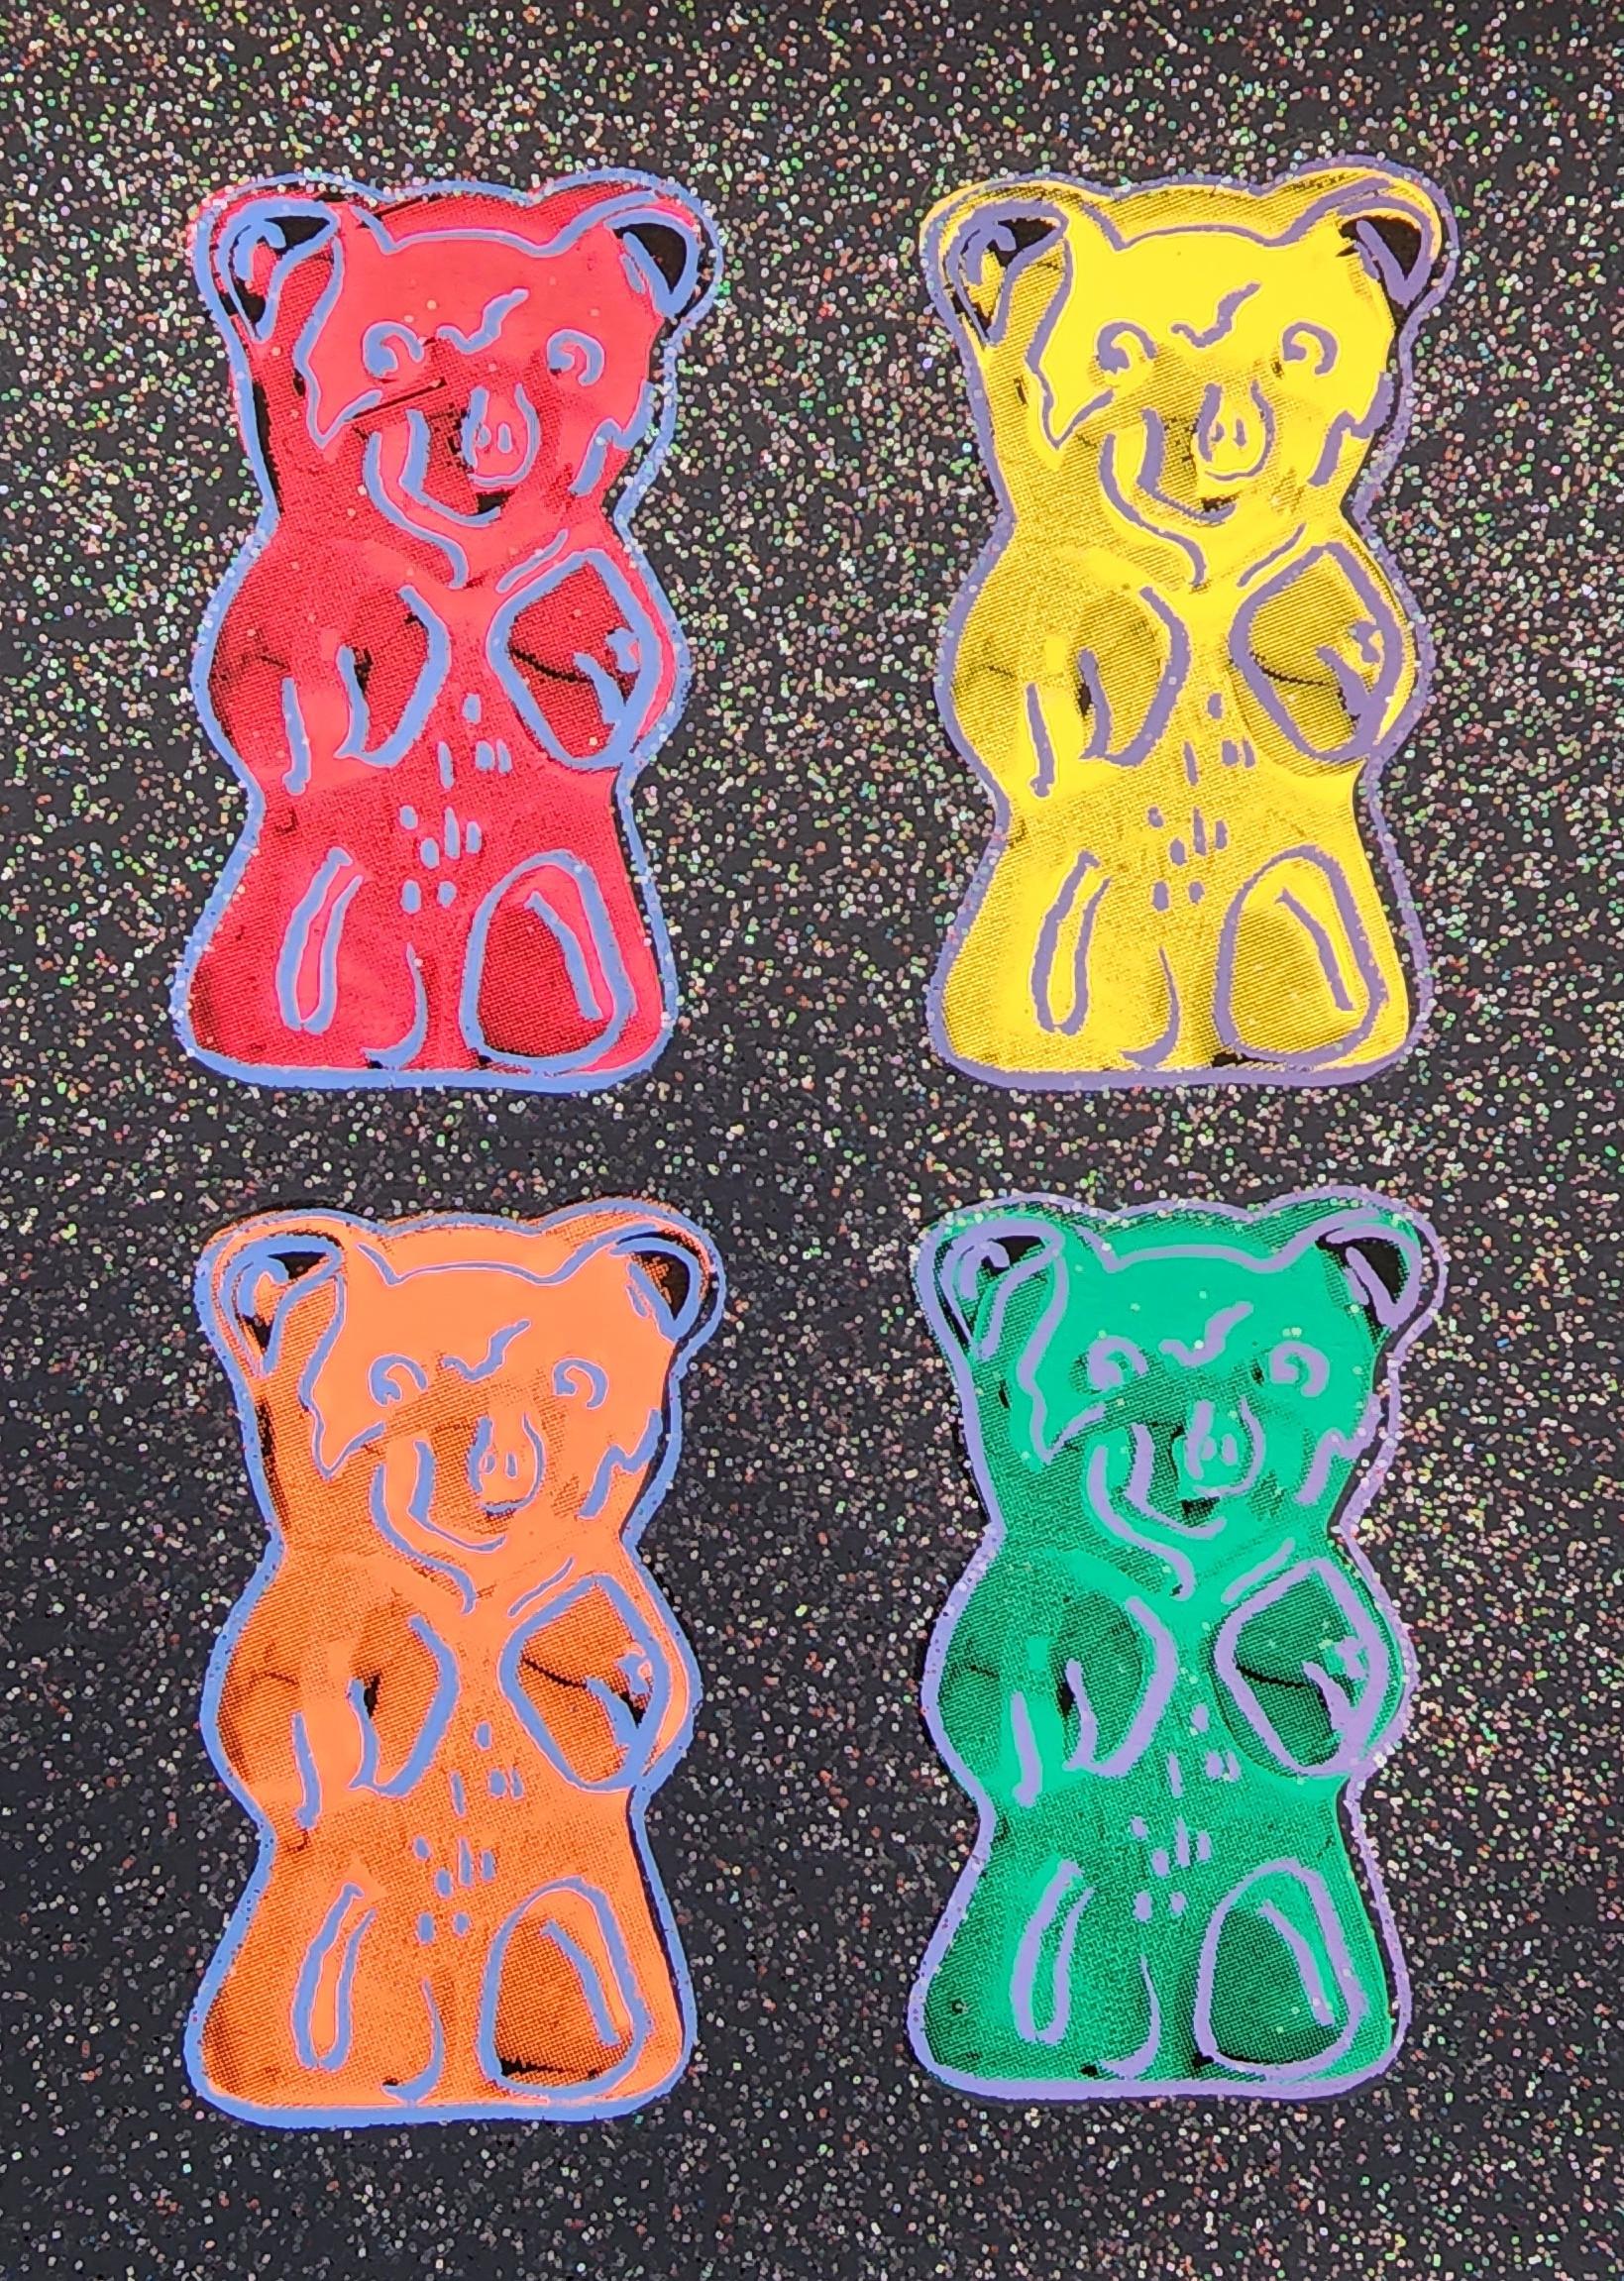 Gummibärchen #2 + Glitter, klein - SCHWARZ (Pop Art, Warhol) (~50% AUS LISTENPREIS)